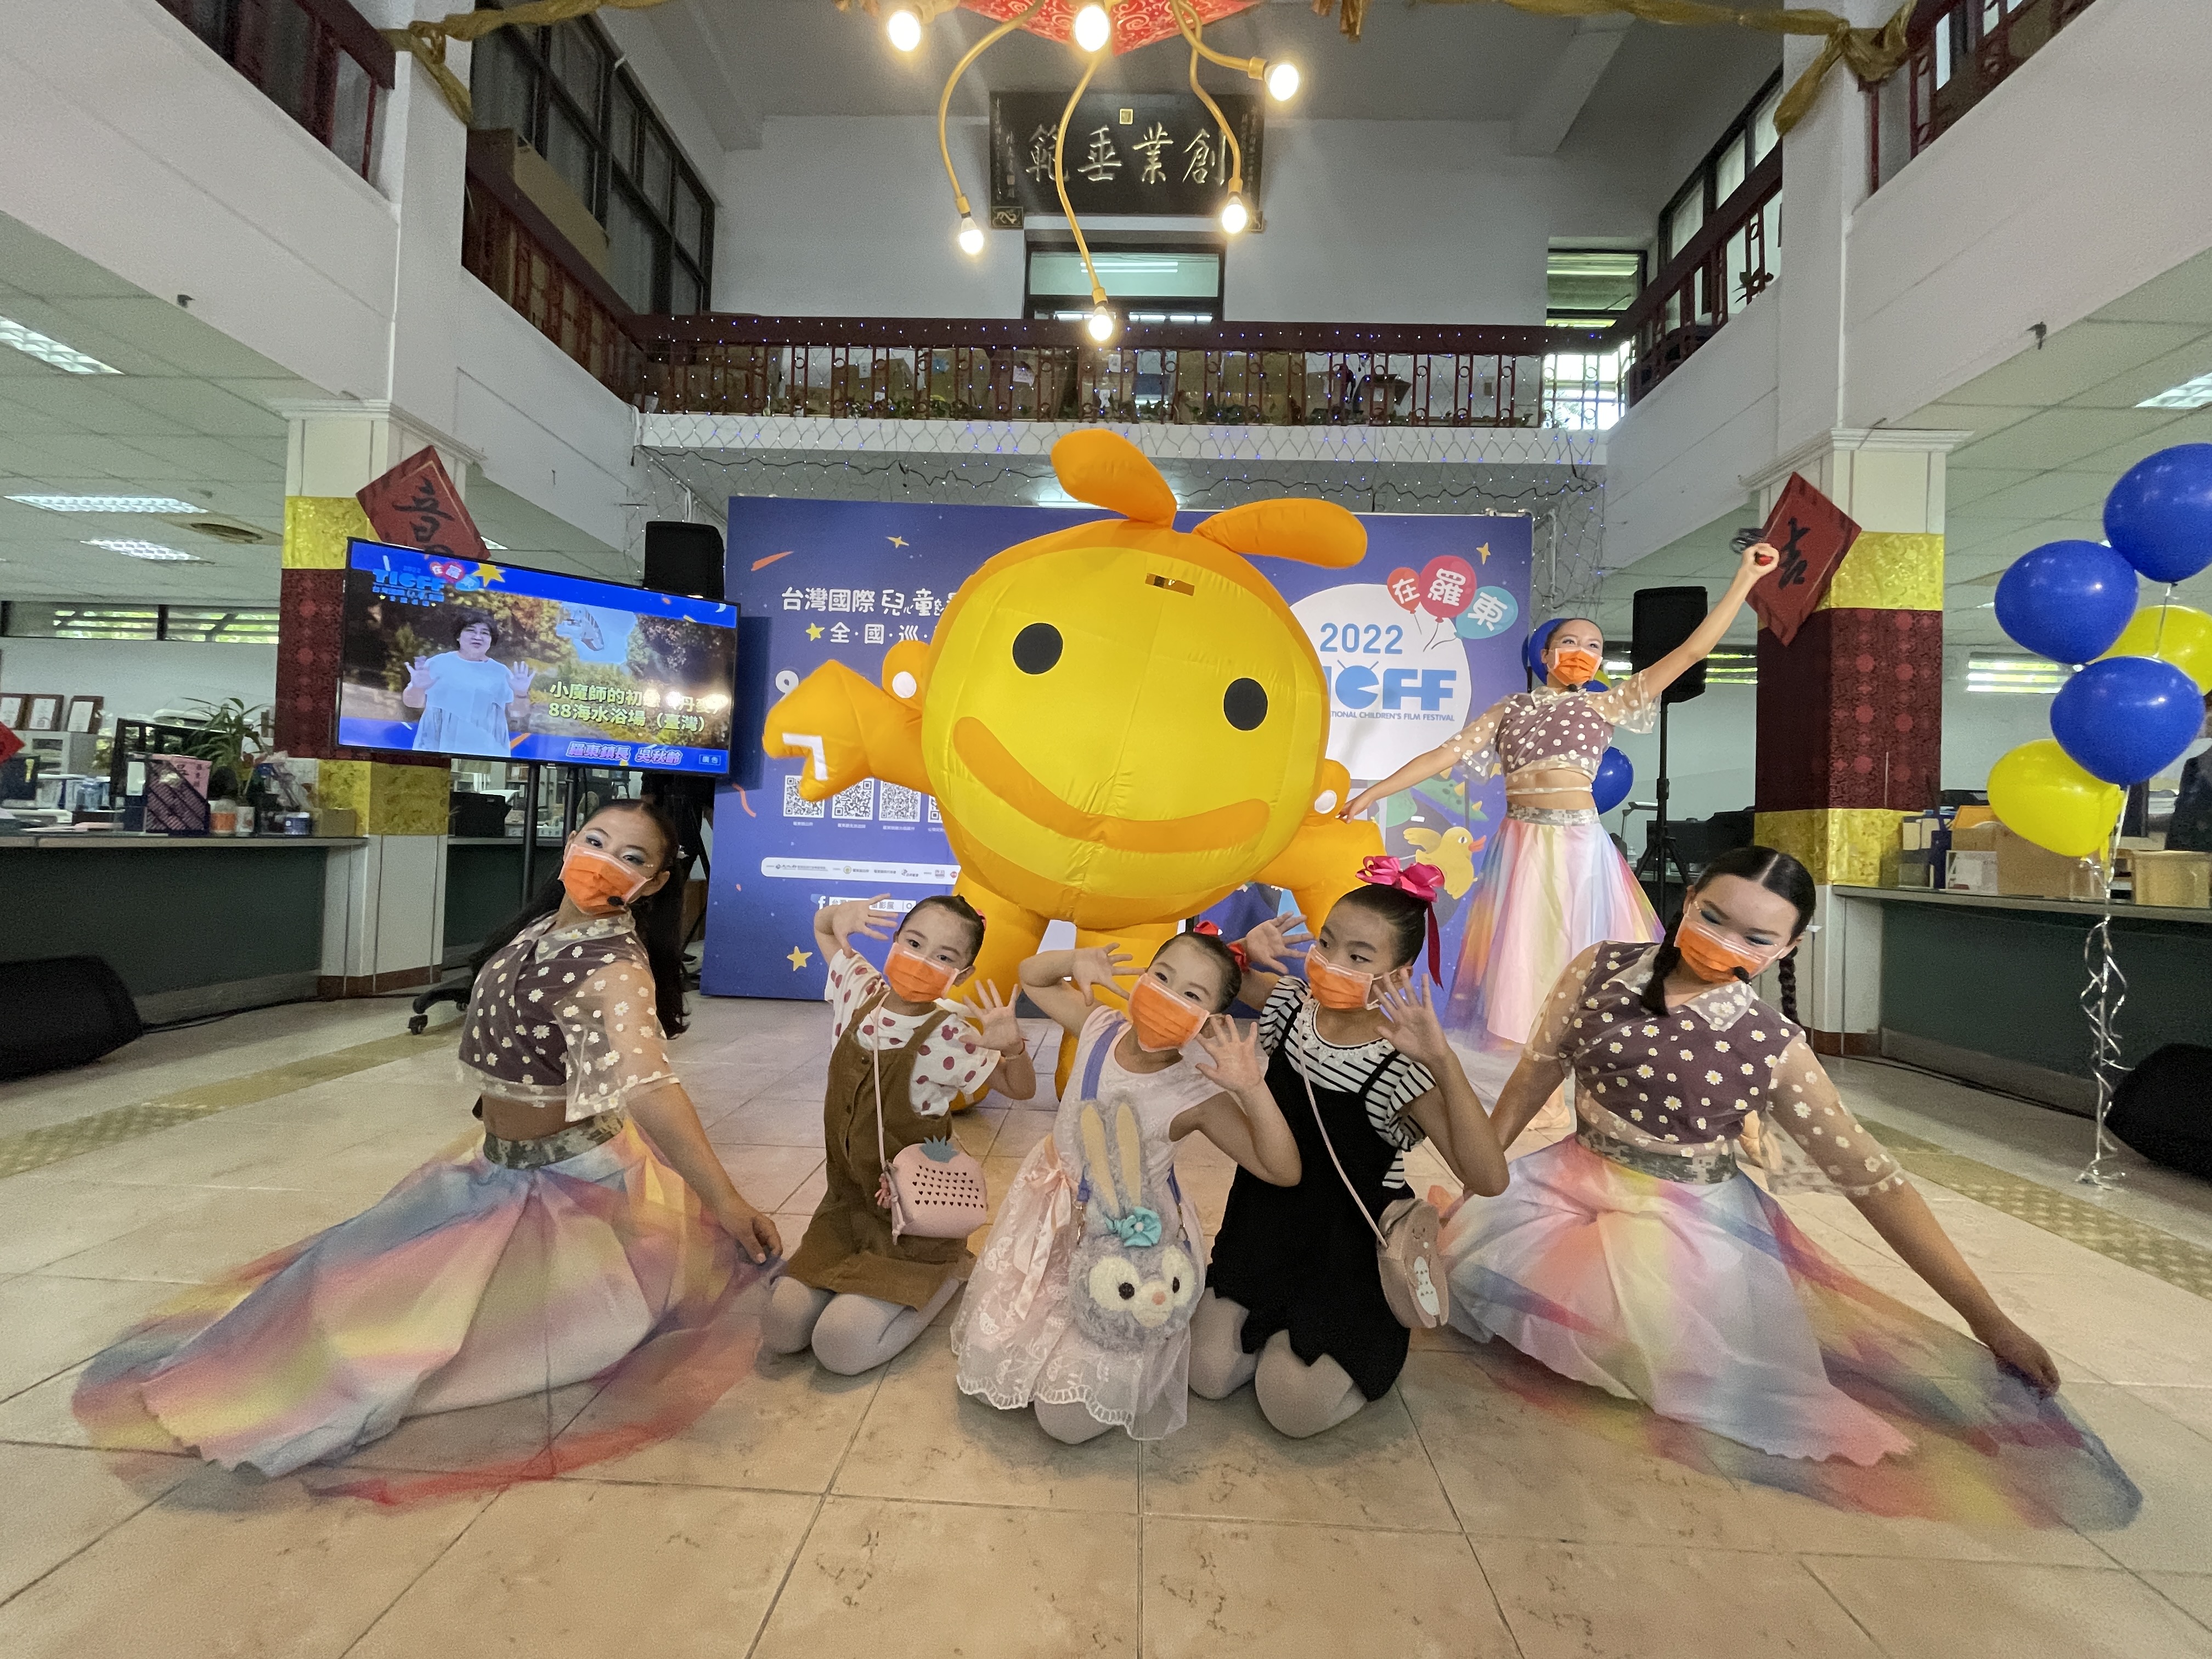 「2022台灣國際兒童影展在羅東」浩子感性分享生命故事 小鎮文化觀光再升級